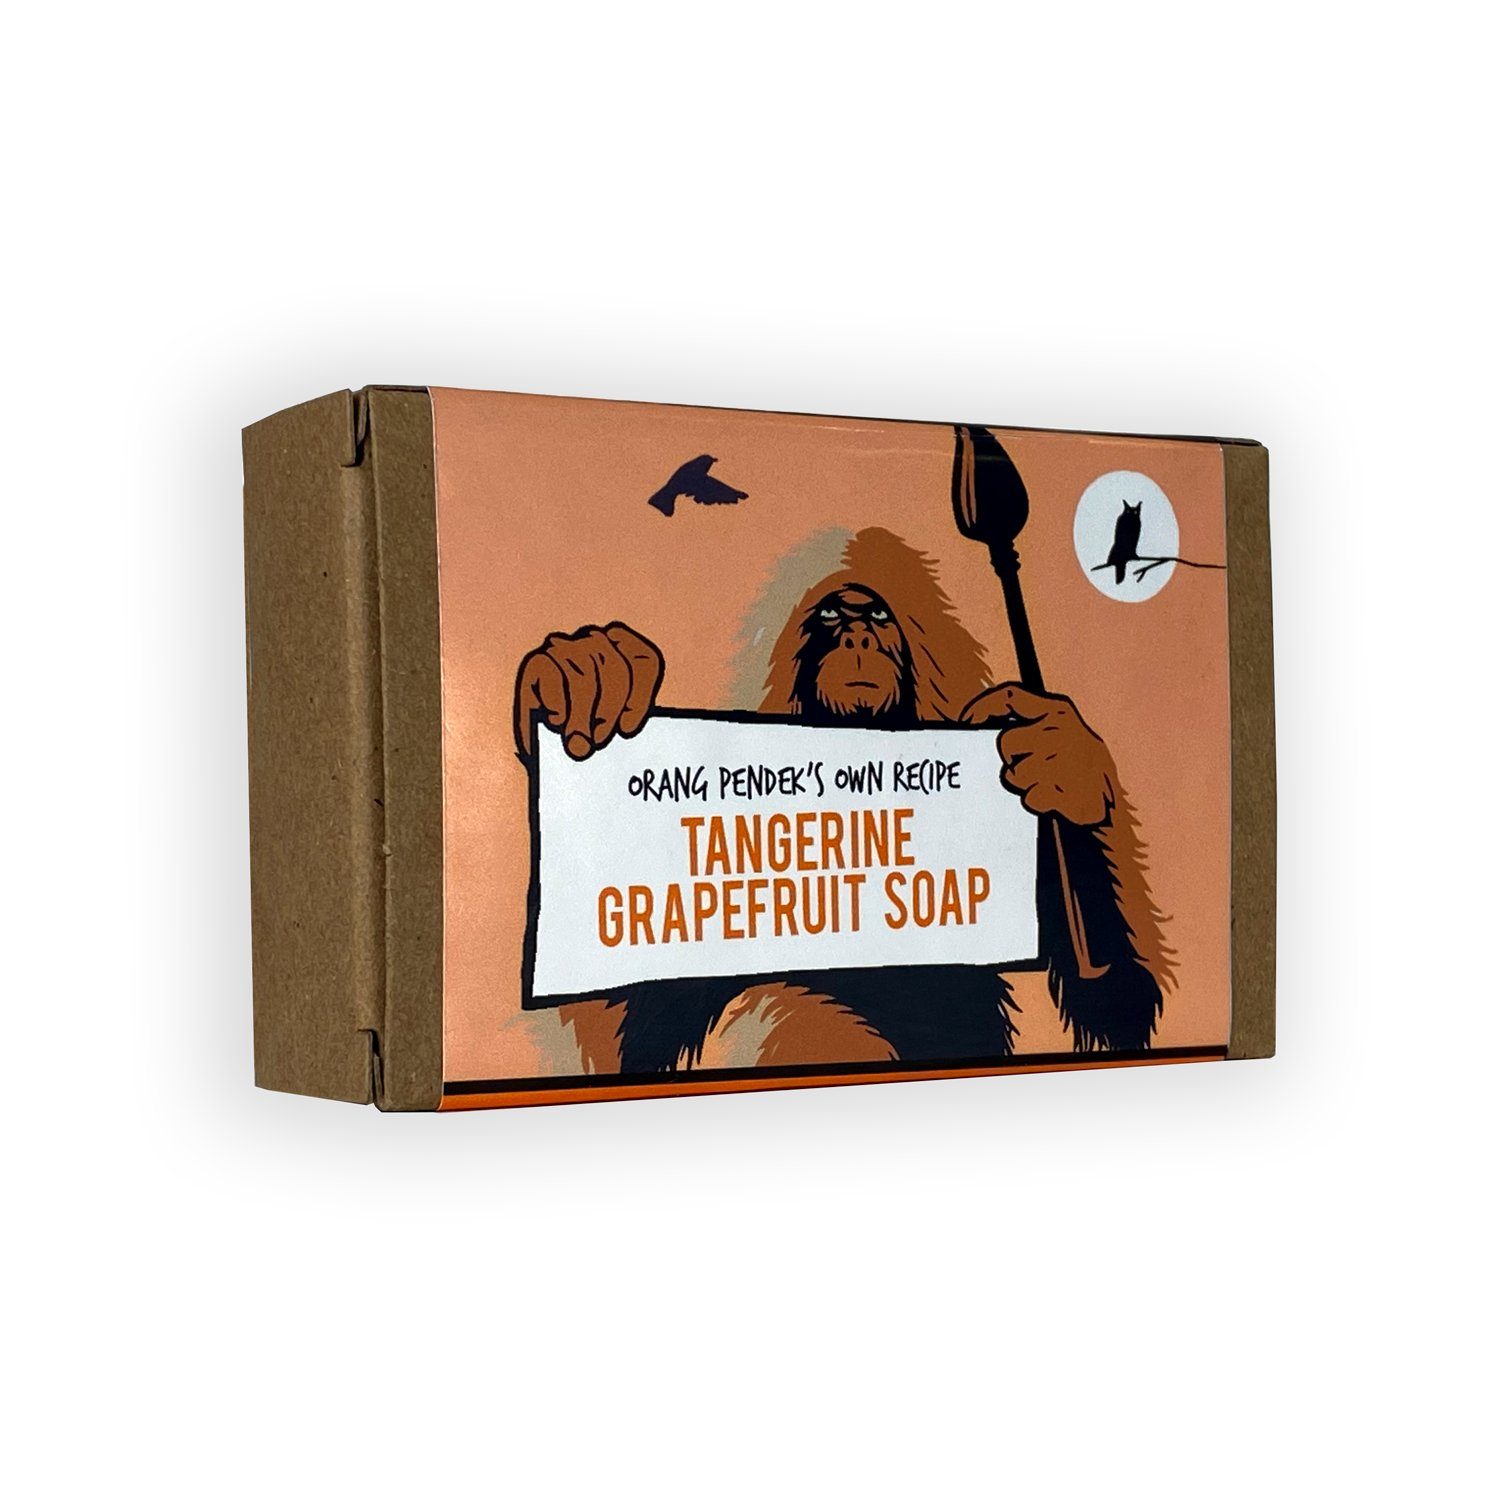 Orang Pendek’s Tangerine Grapefruit | Cold Press Soap